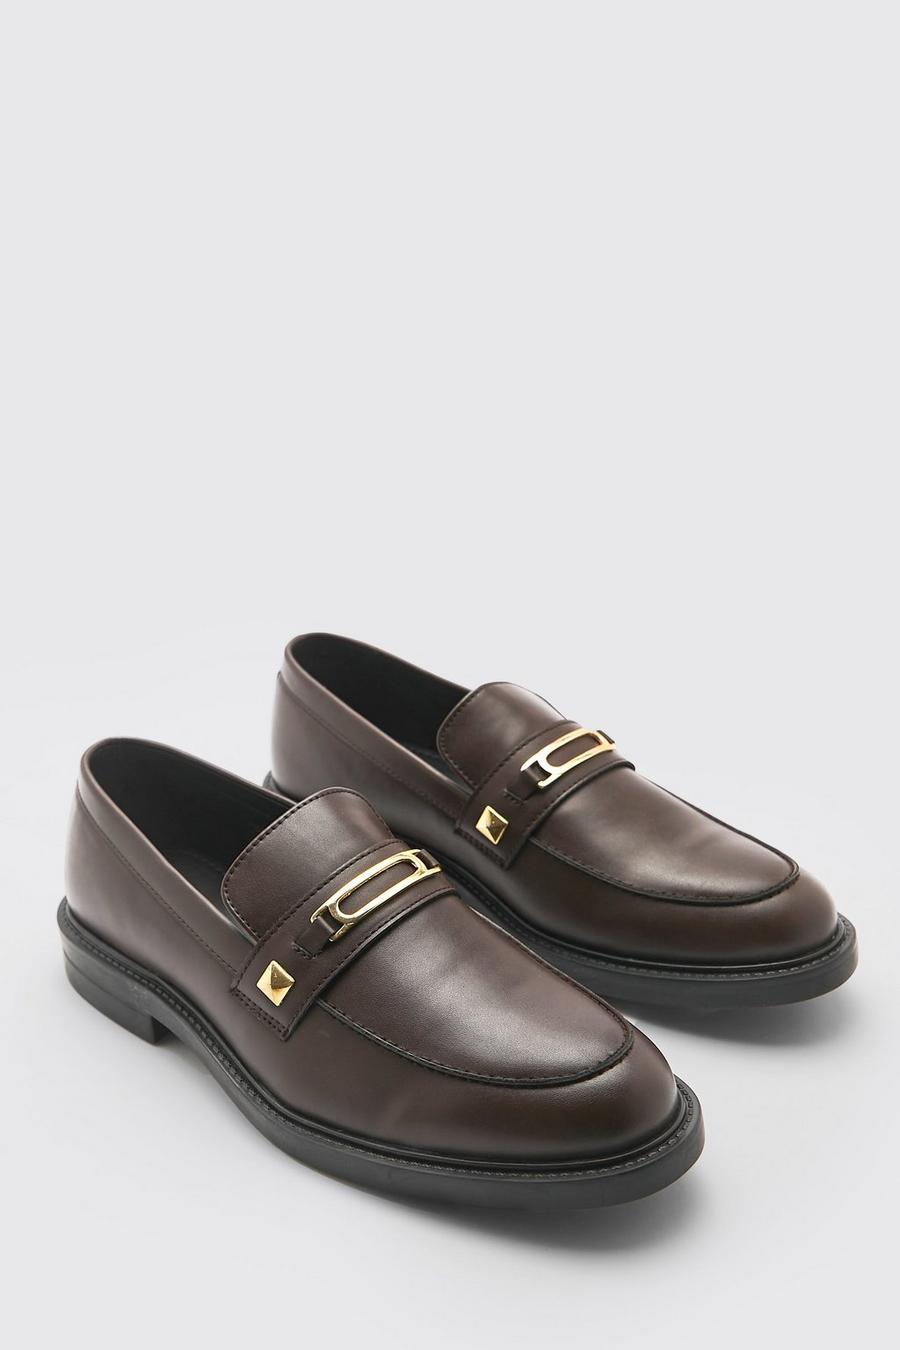 Zapatos castellanos con detalle metálico, Chocolate marrón